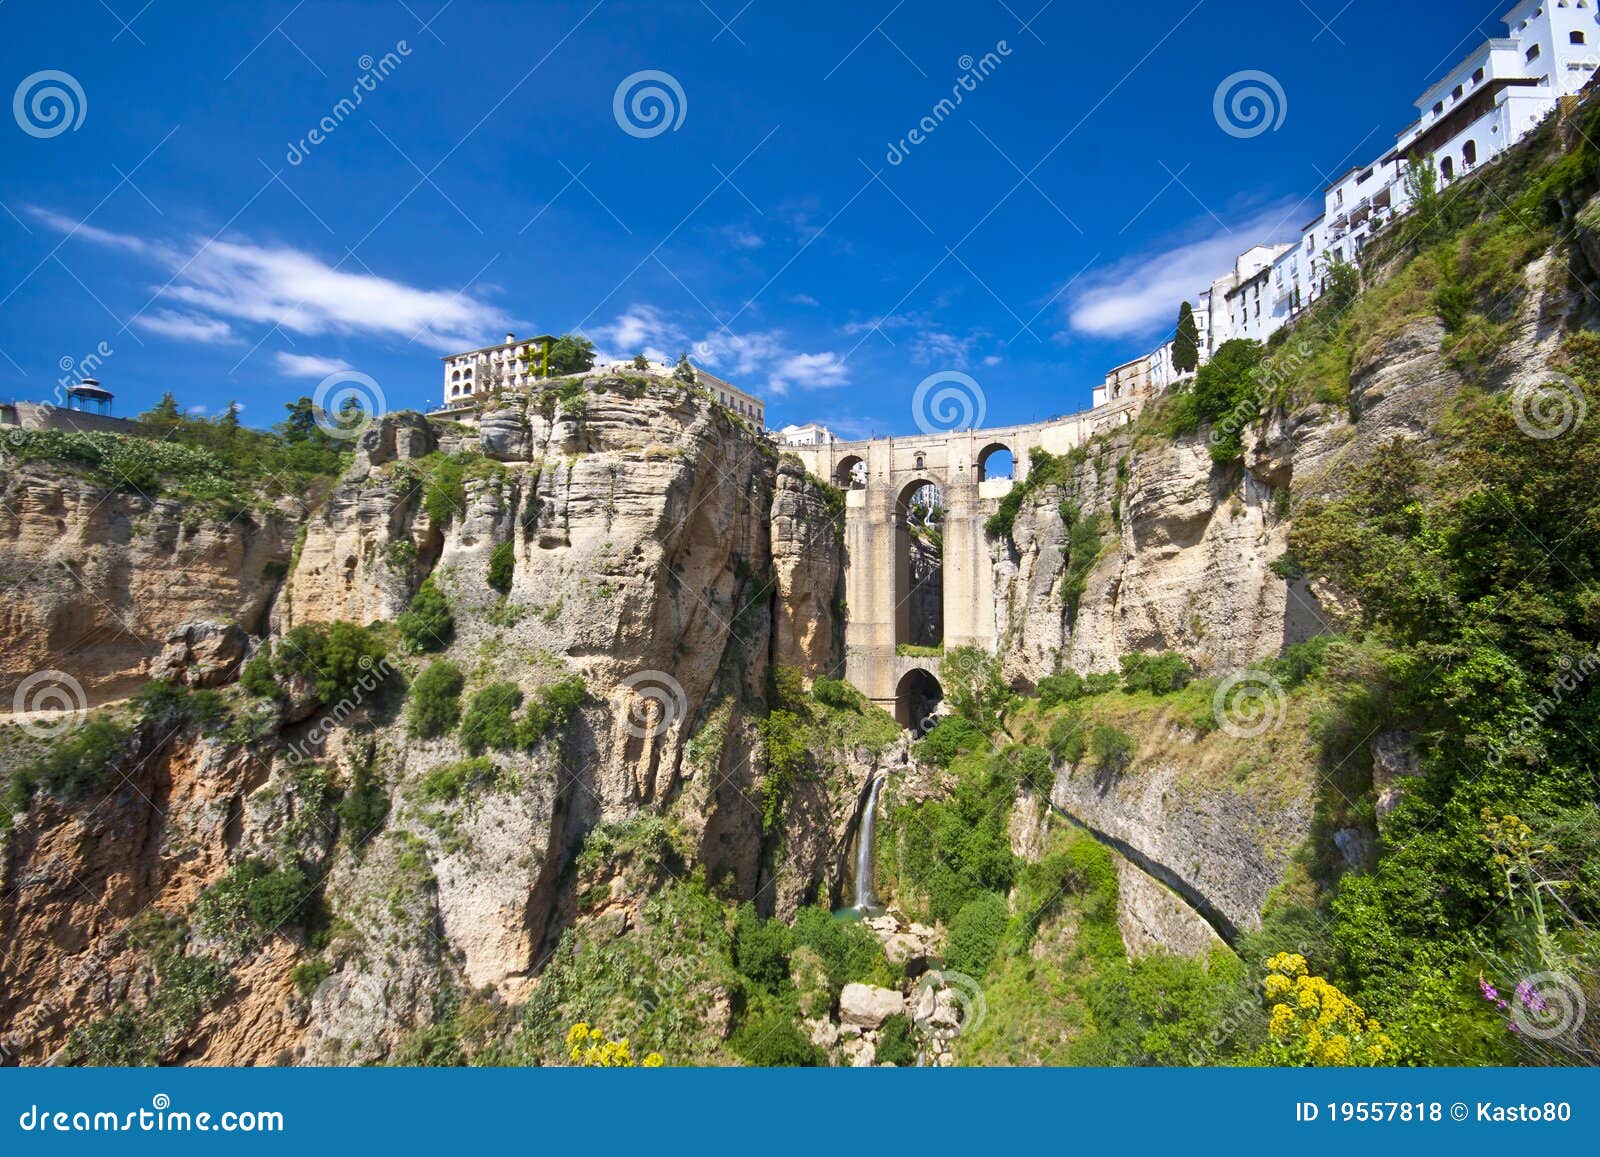 Photos libres de droits: Vue panoramique de Ronda, Andalousie, Espagne